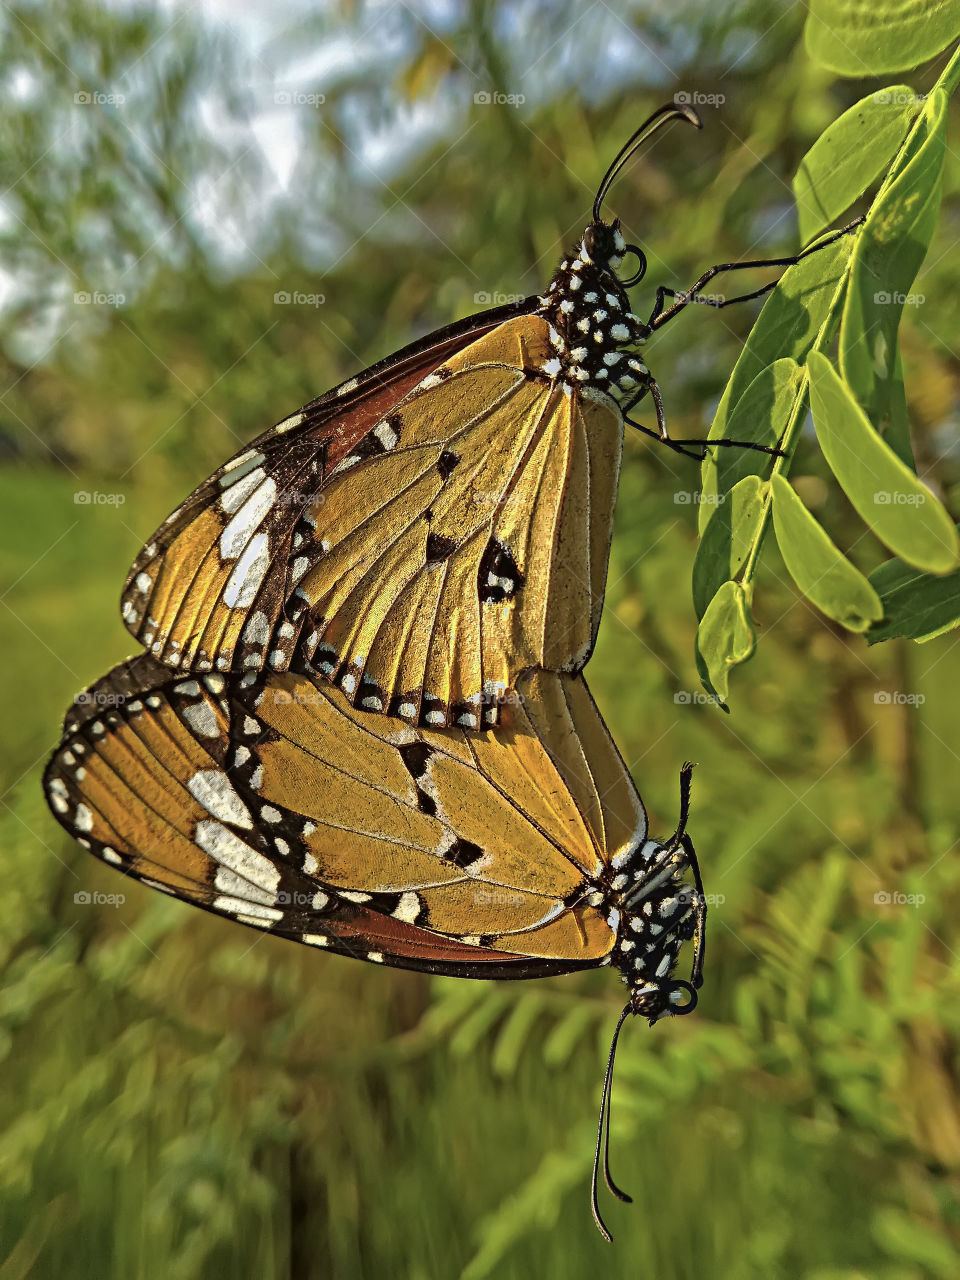 mating butterflies.